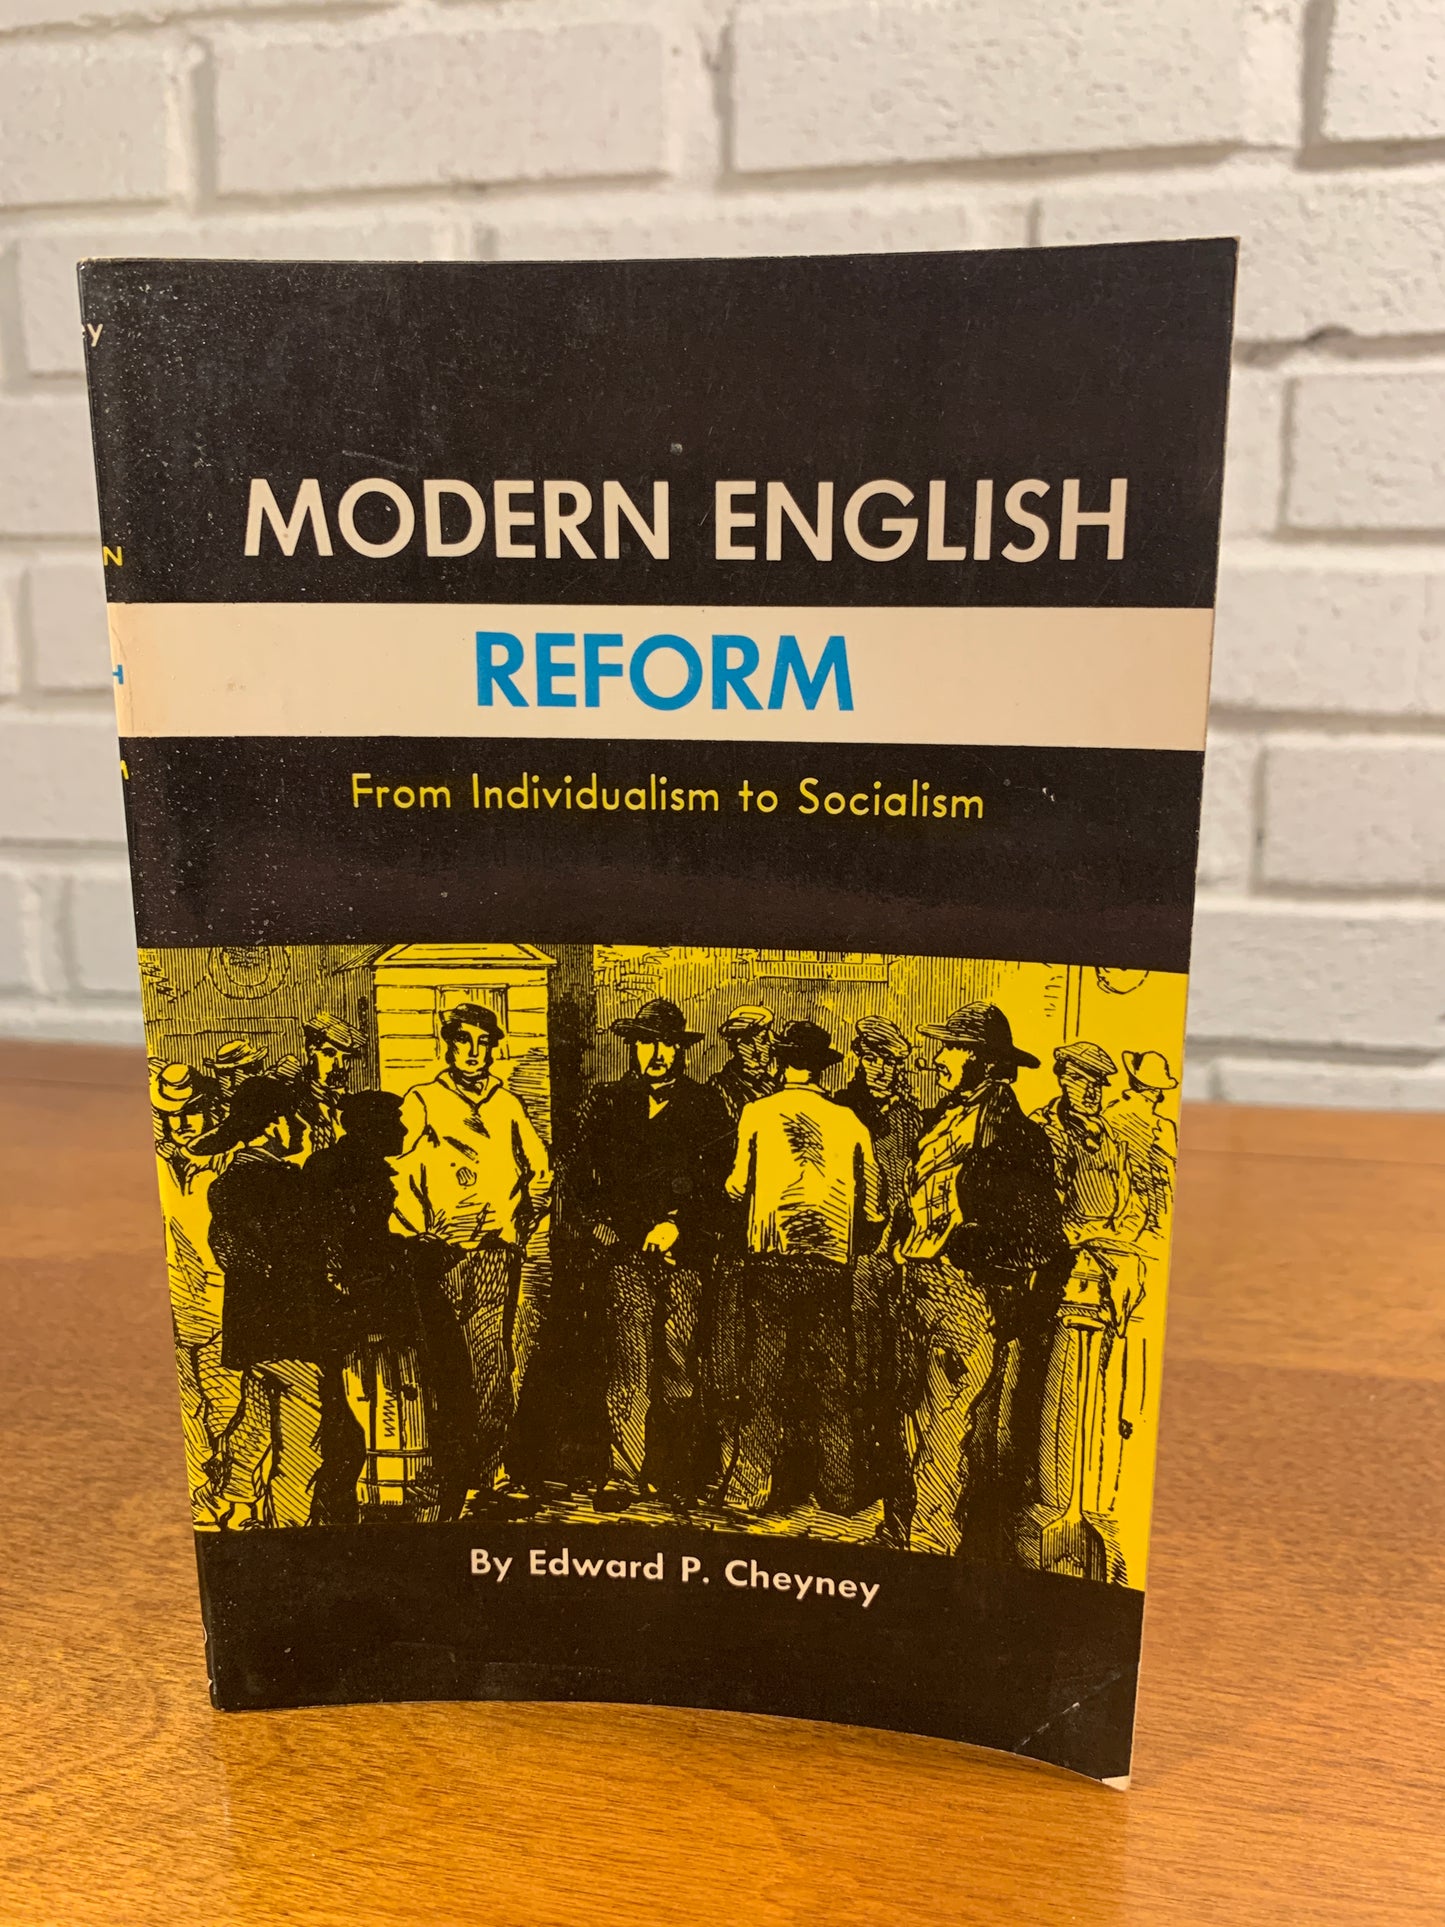 Modern English Reform by Edward P. Cheyney, 1962